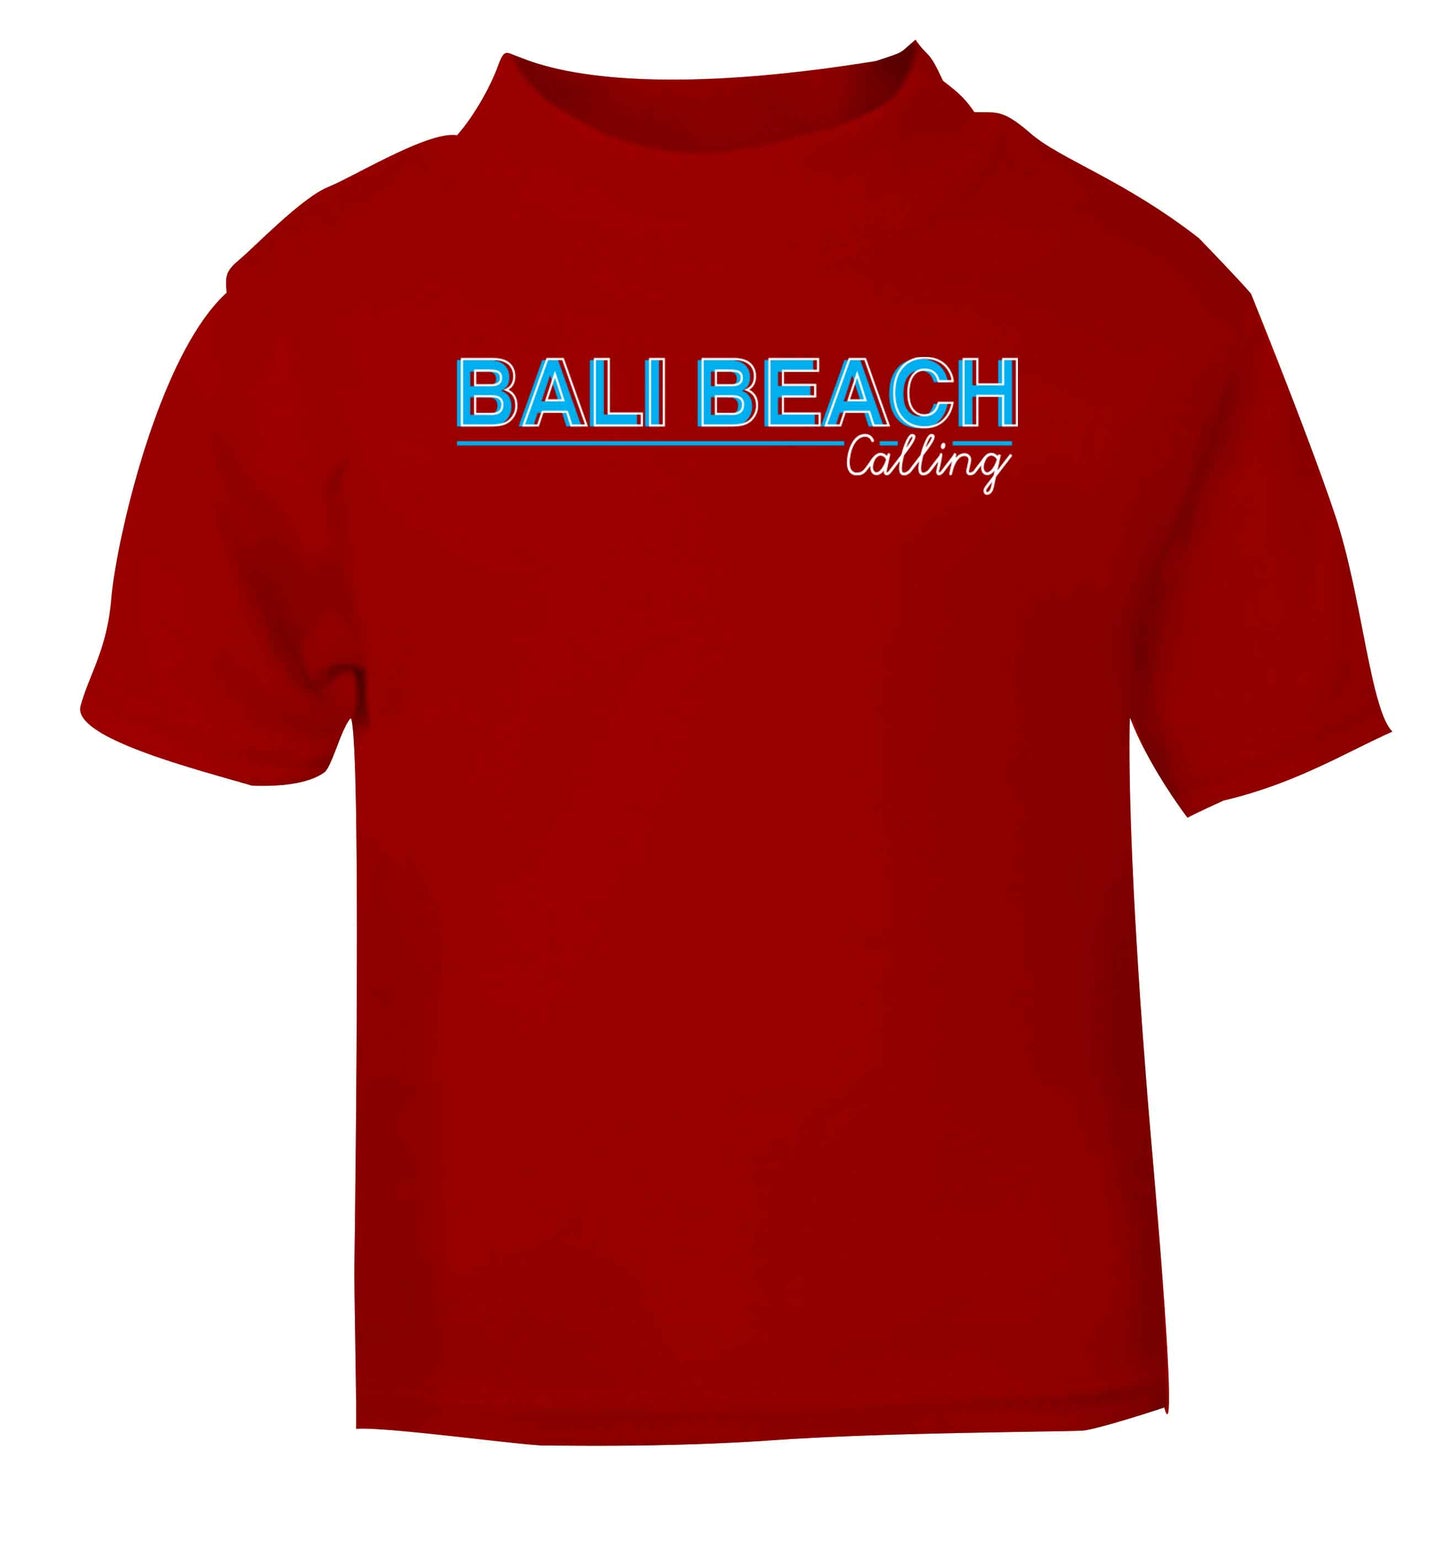 Bali beach calling red Baby Toddler Tshirt 2 Years